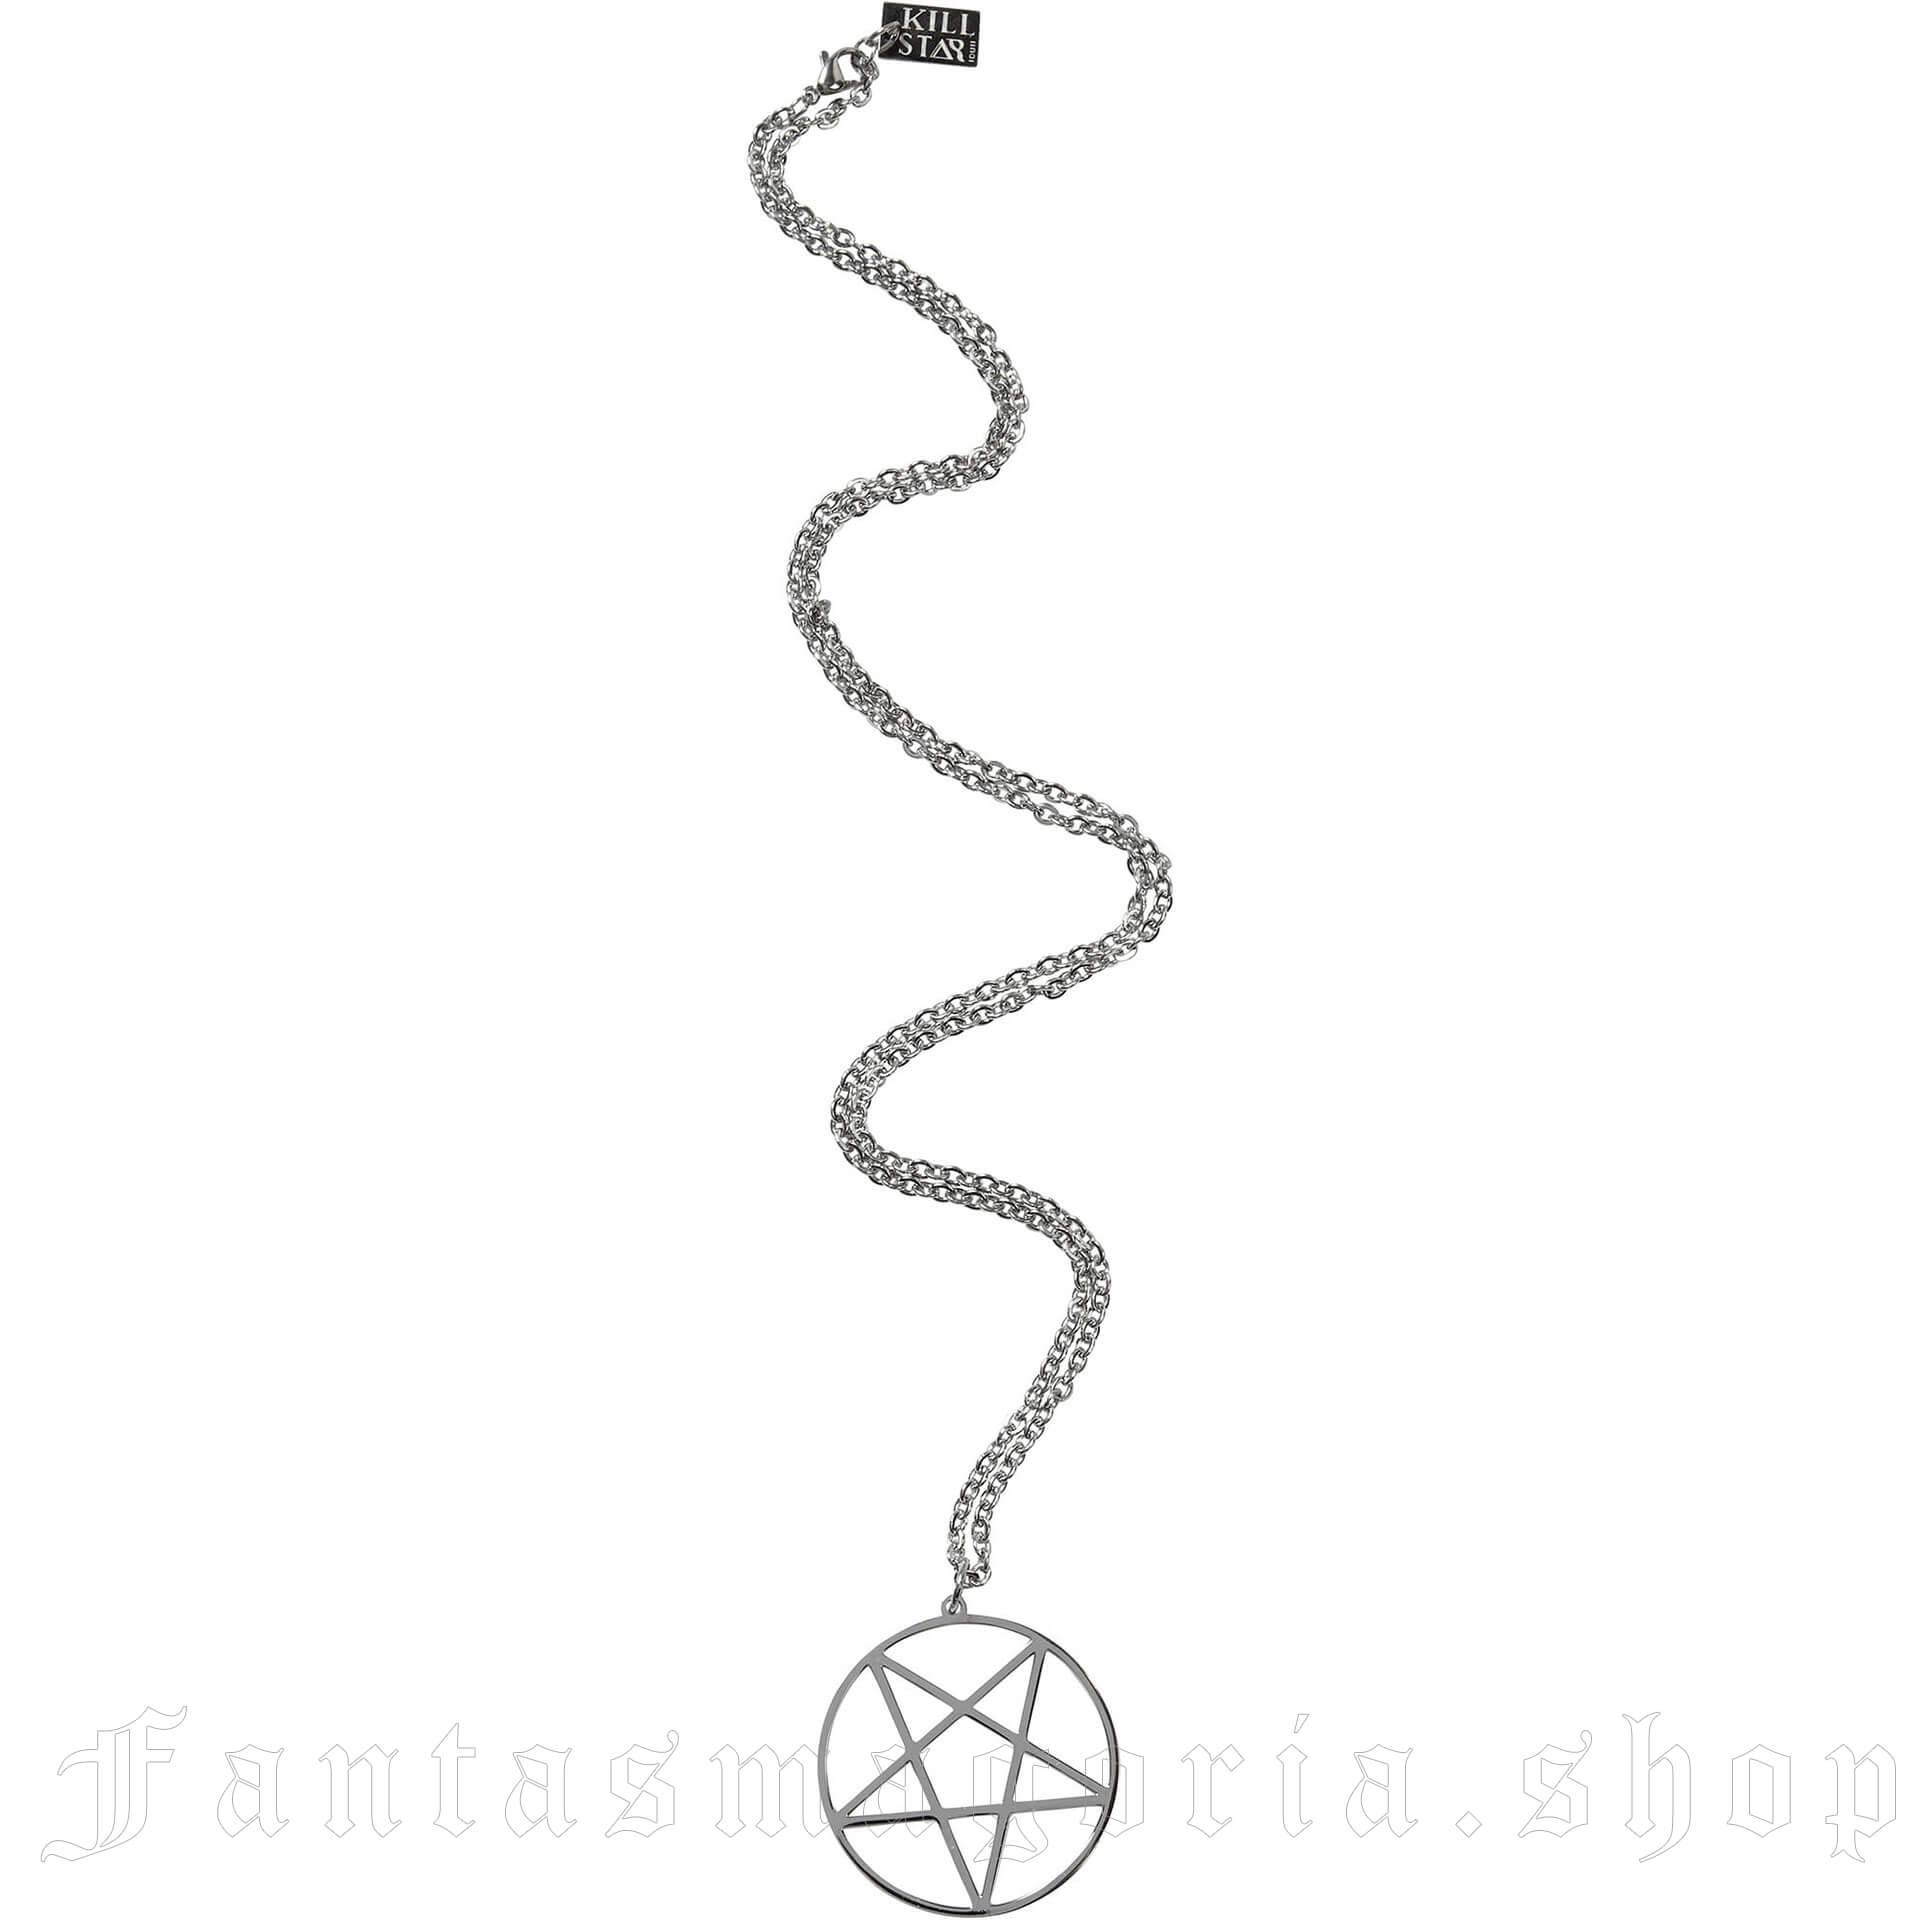 Stainless Necklace with Pentagram Pendant - Killstar KSRA000632